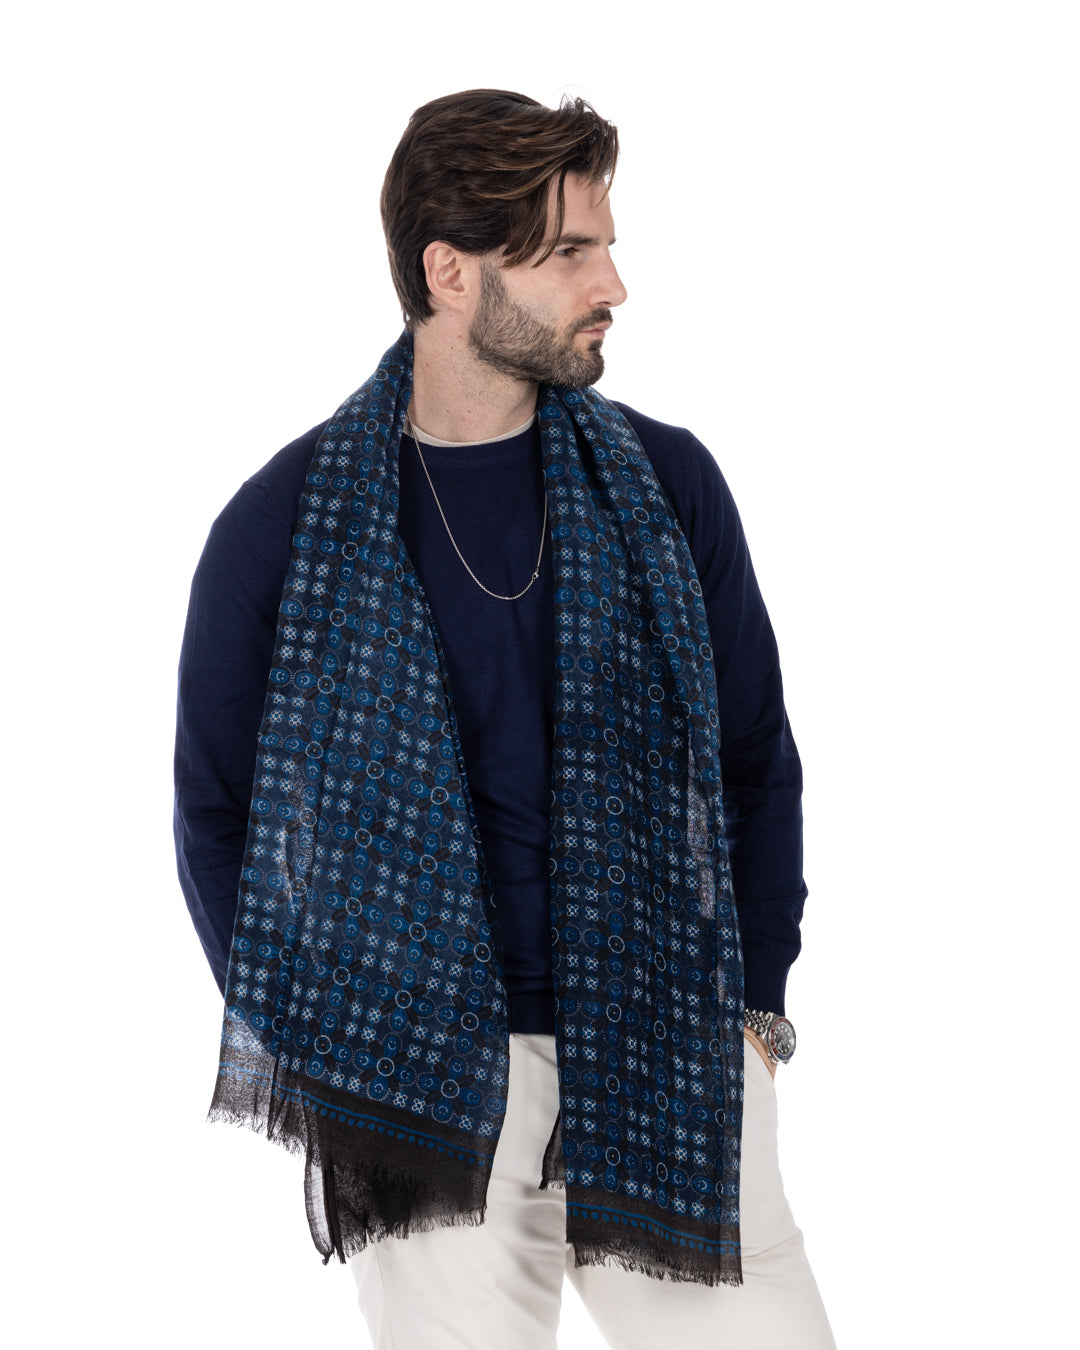 Fes - blue wool scarf